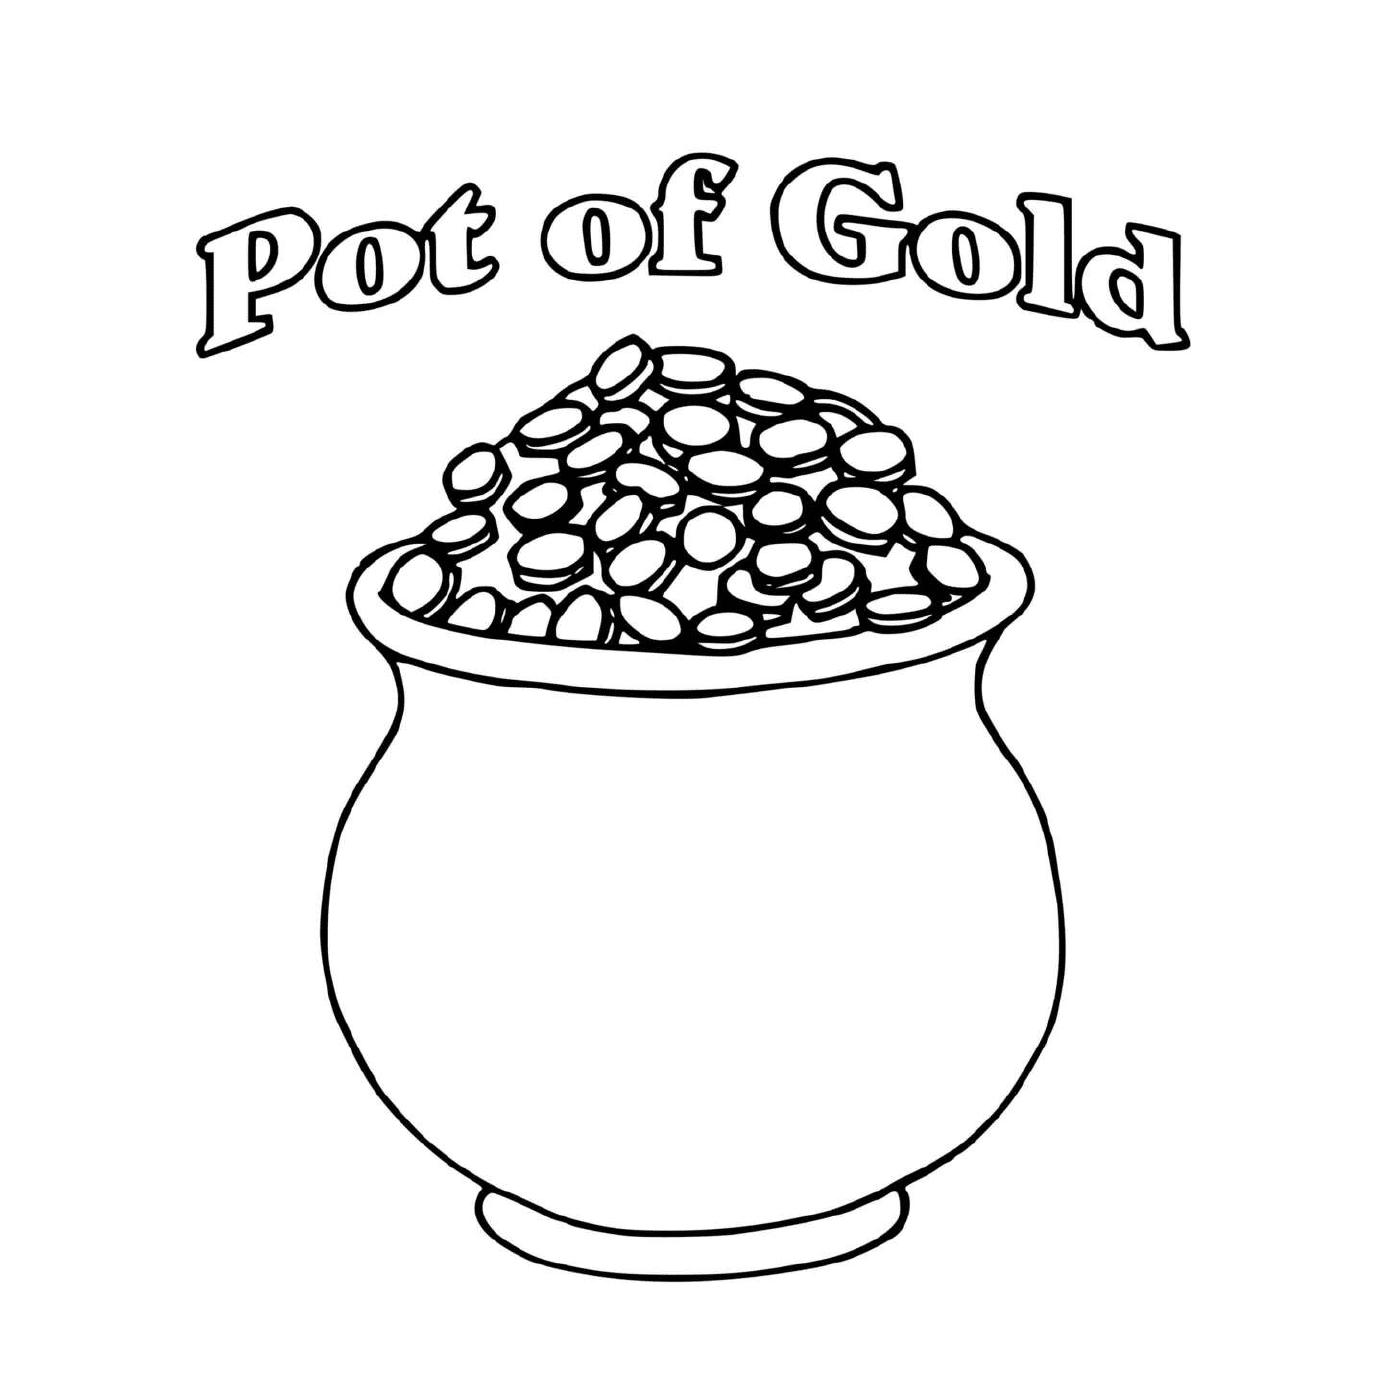  Una olla de oro llena de monedas para San Patricio 